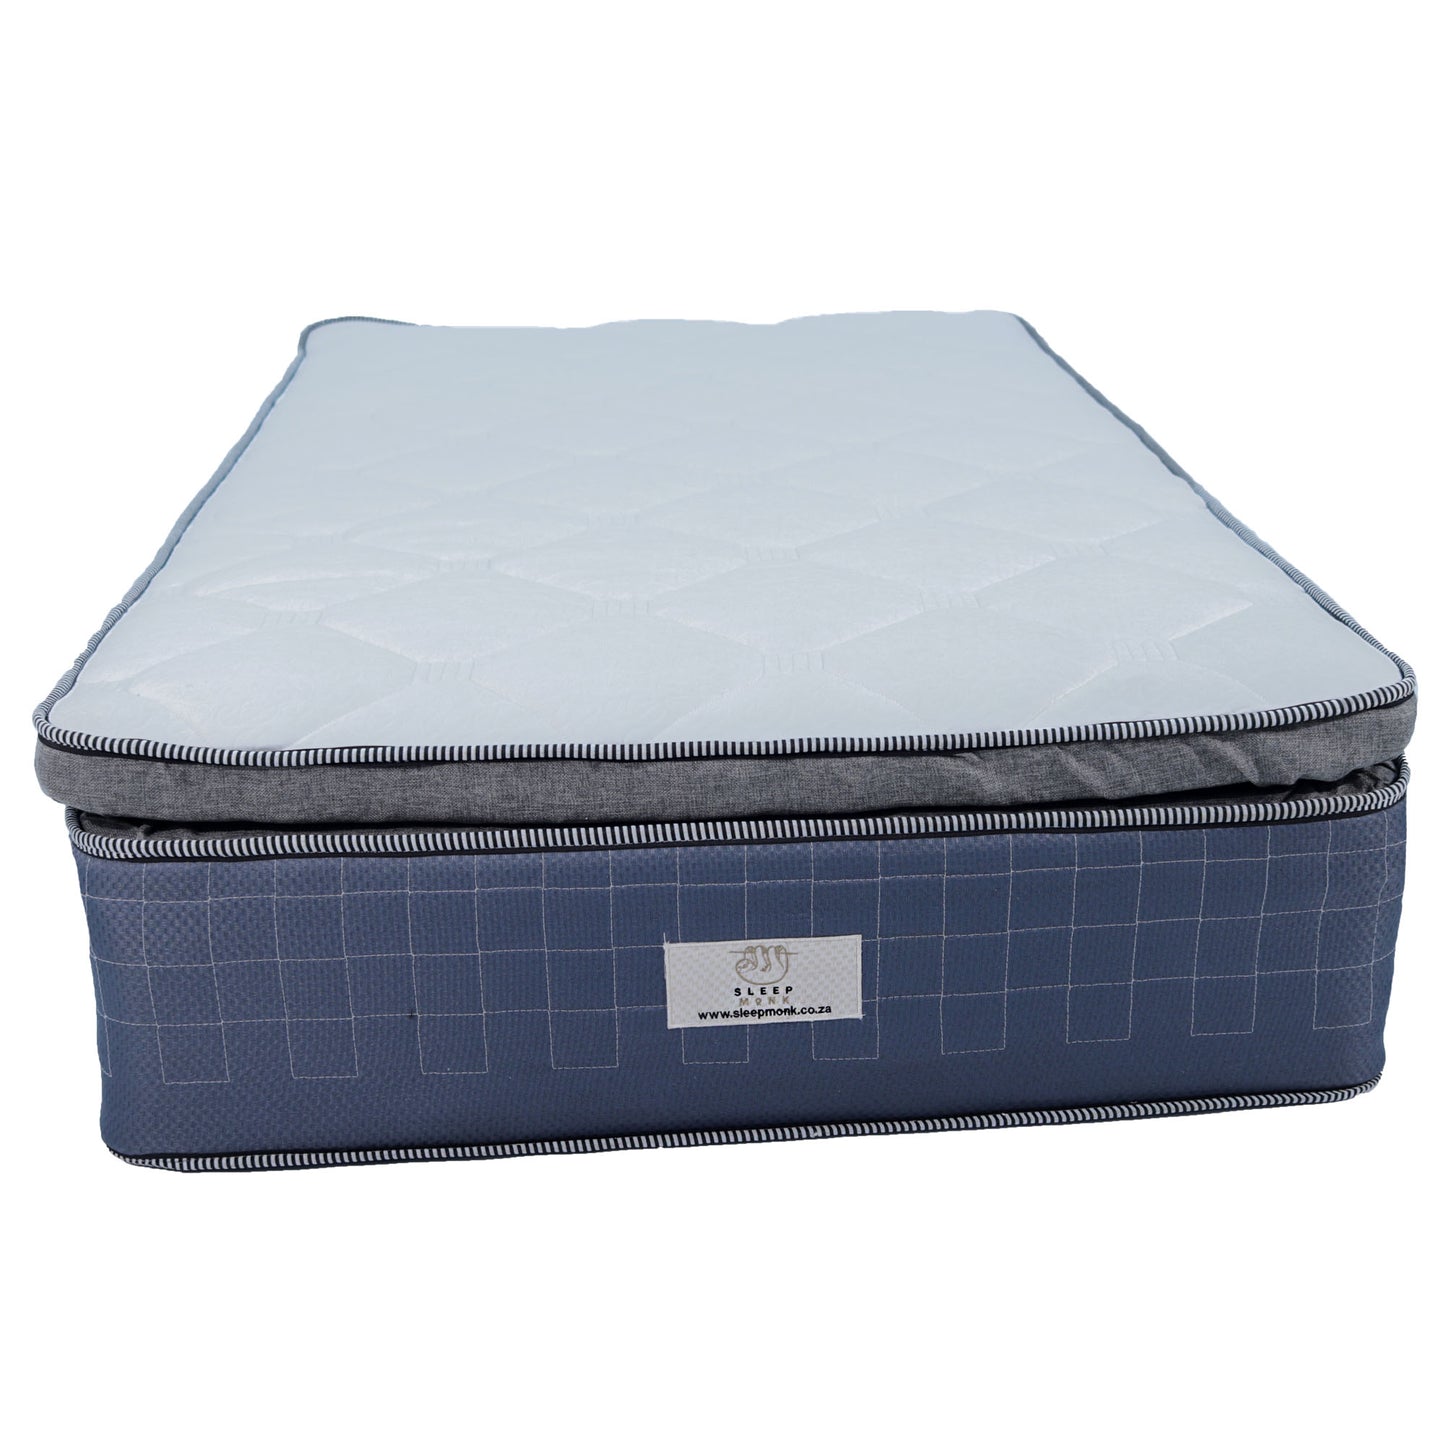 Executive Spine  Queen Mattress - Premium Bed from SLEEPMONK - Just R 5000! Shop now at SLEEPMONK